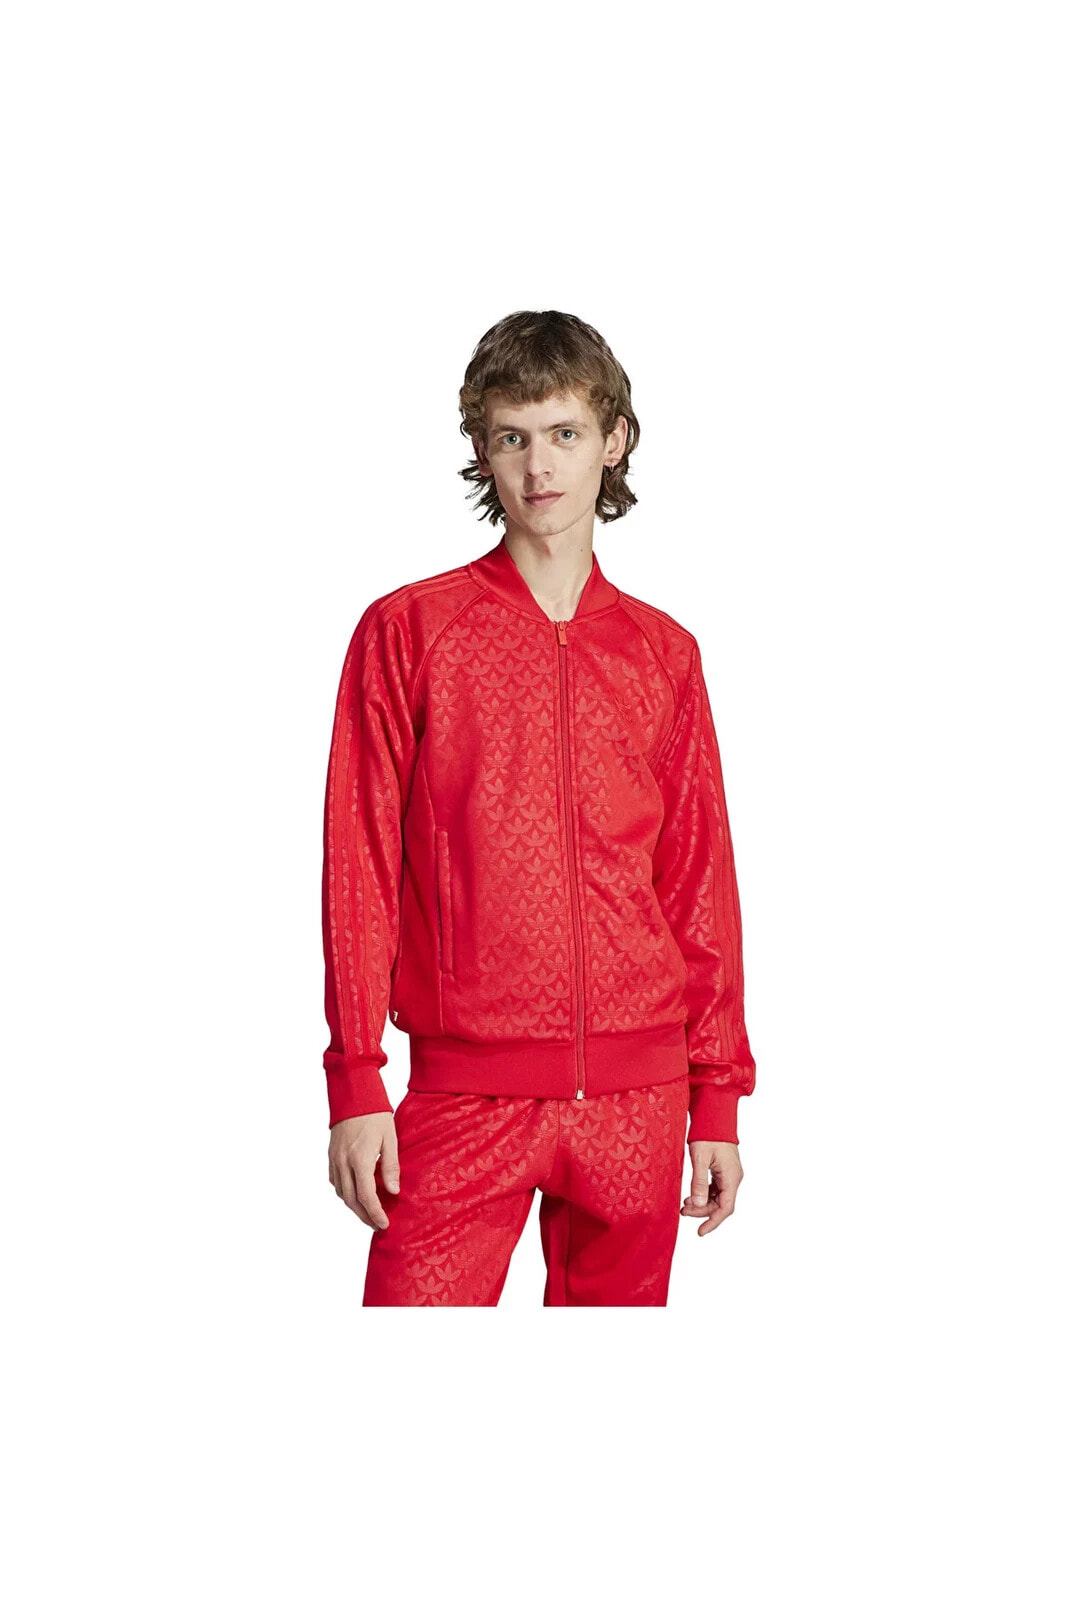 IJ5689-E adidas Mono Sst Tt Erkek Ceket Kırmızı